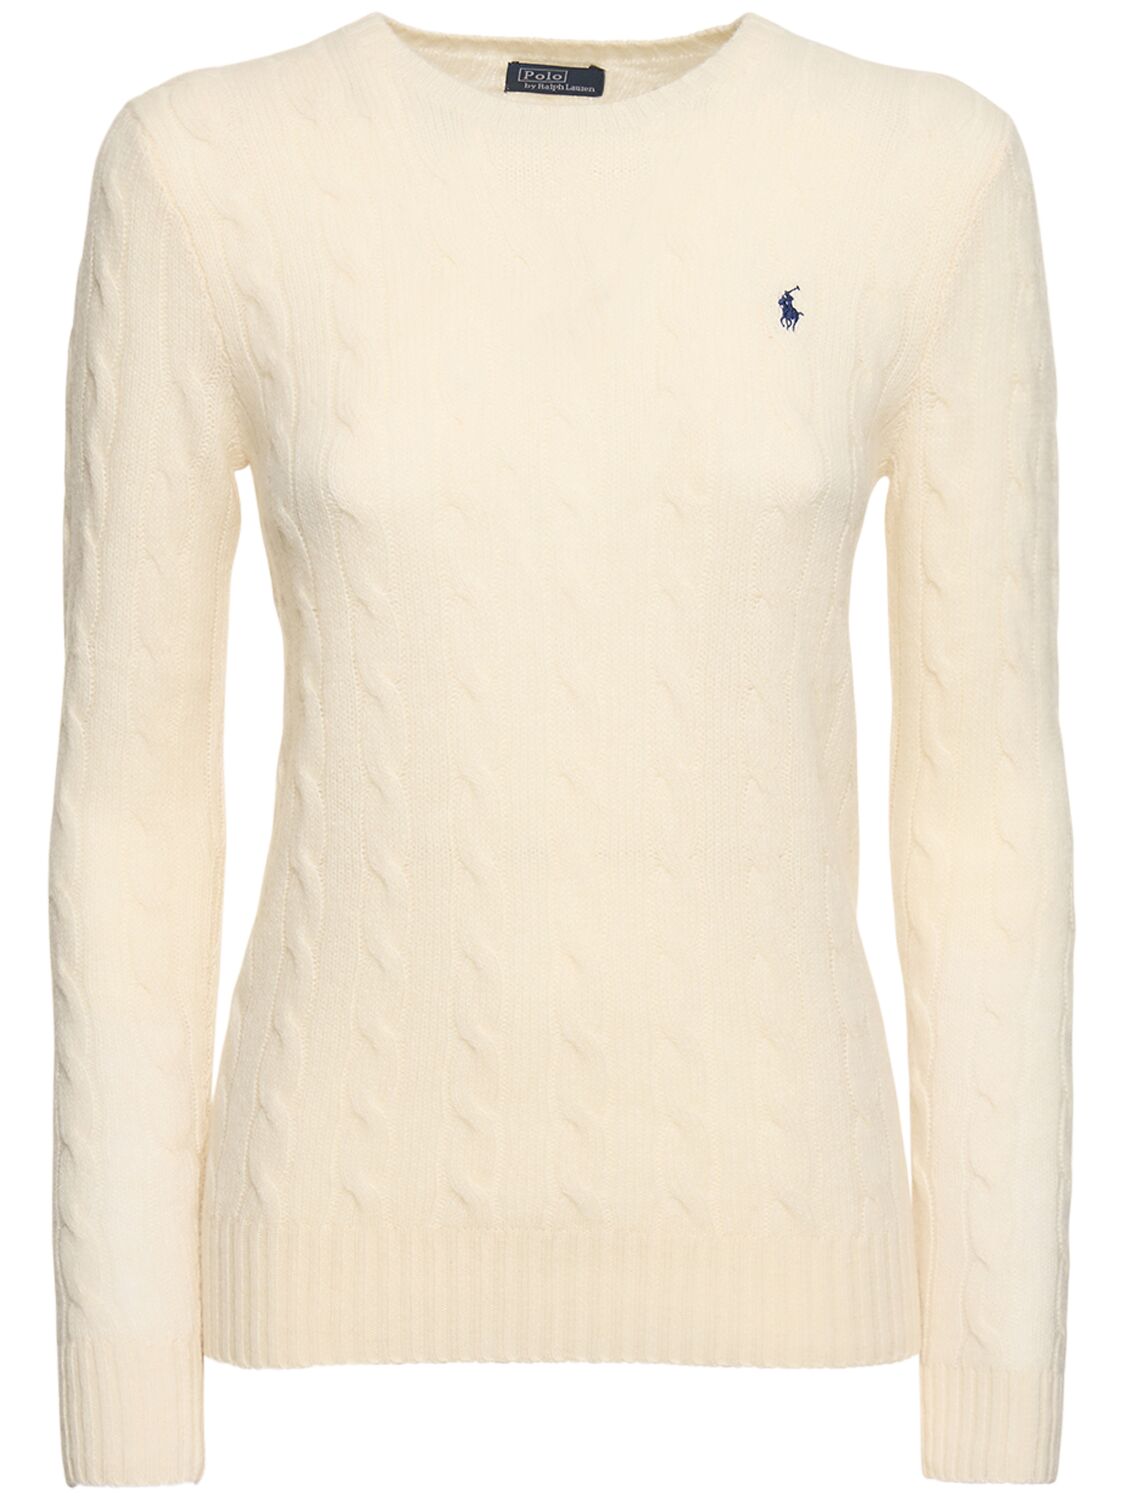 Polo Ralph Lauren Julianna Wool & Cashmere Sweater